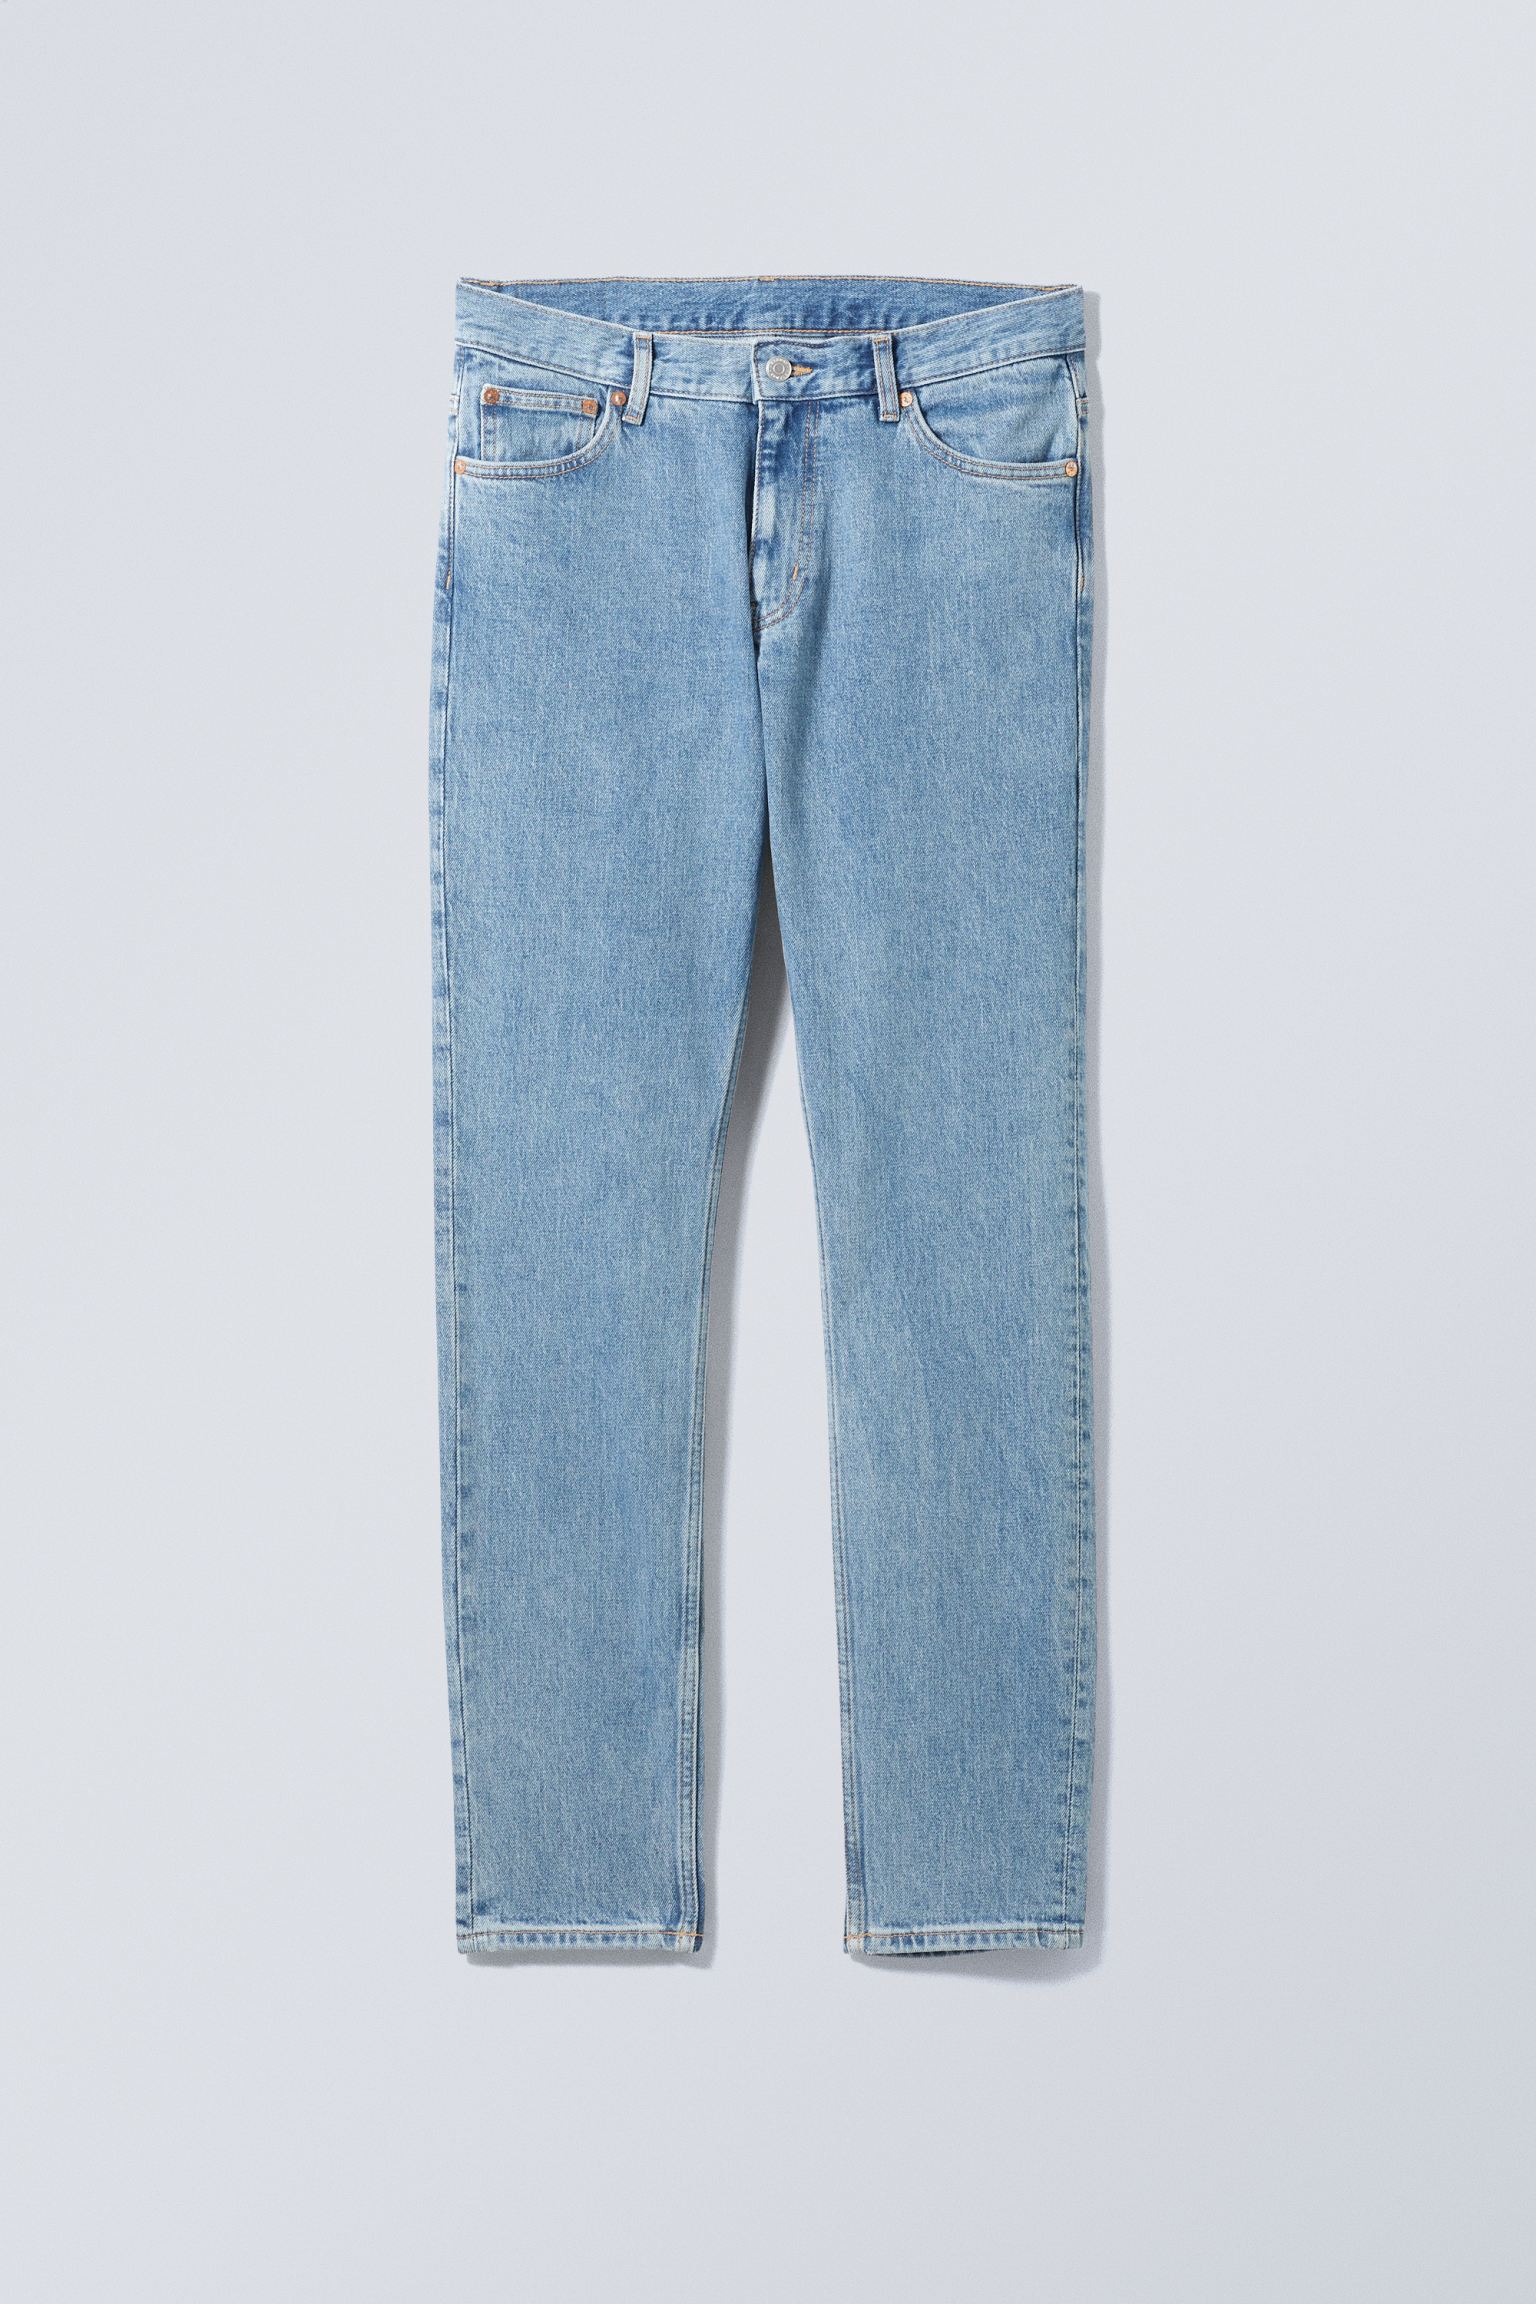 Weekday Schmale Jeans Sunday mit konisch zulaufendem Bein Tiefblau, Skinny in Größe 31/34. Farbe: Cerulean blue von Weekday